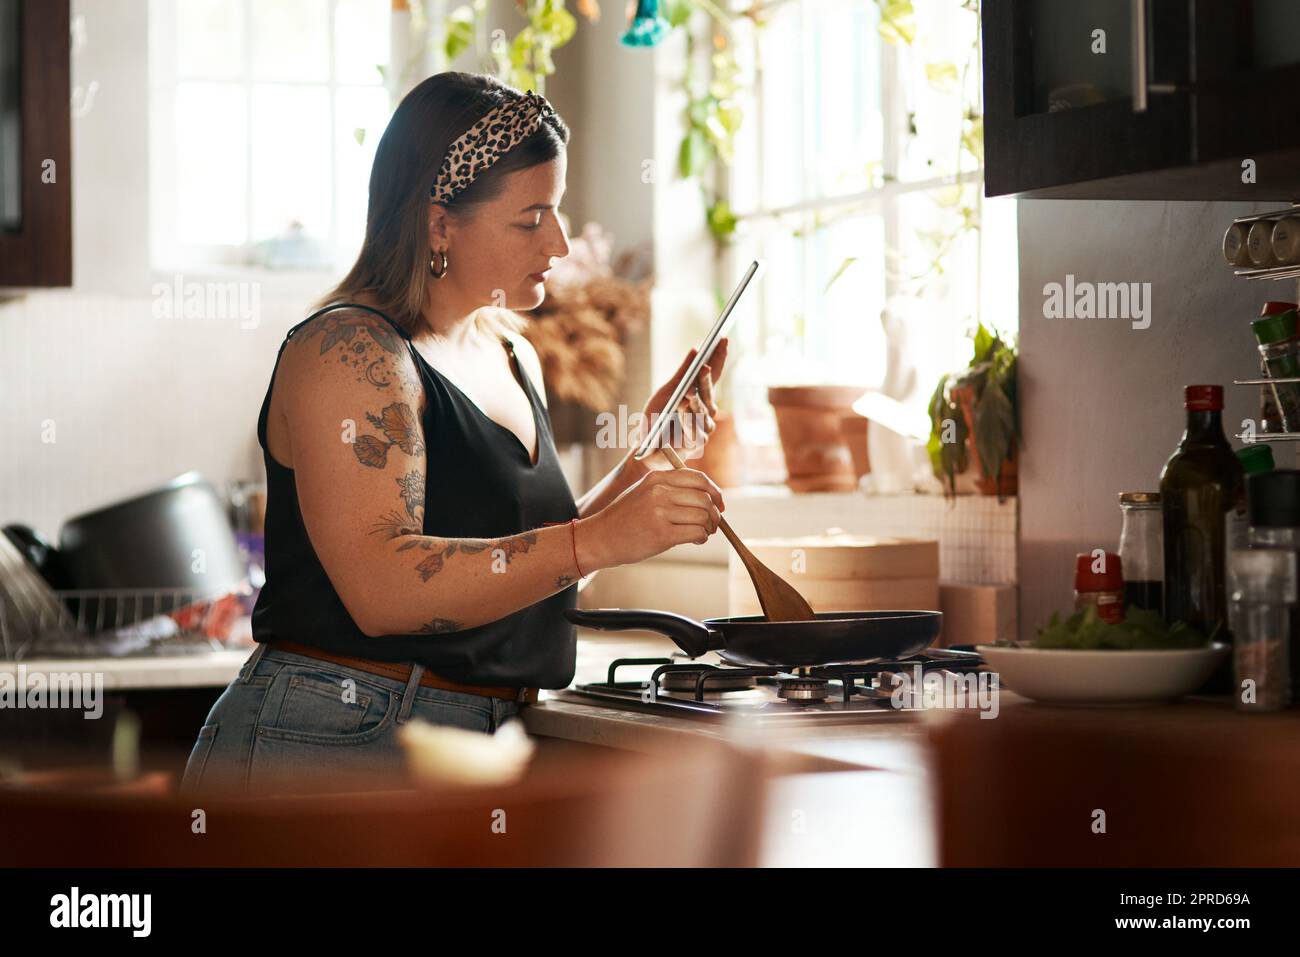 Pas de livre de cuisine, Pas de problème. une jeune femme utilisant une tablette numérique tout en préparant un repas à la maison. Banque D'Images